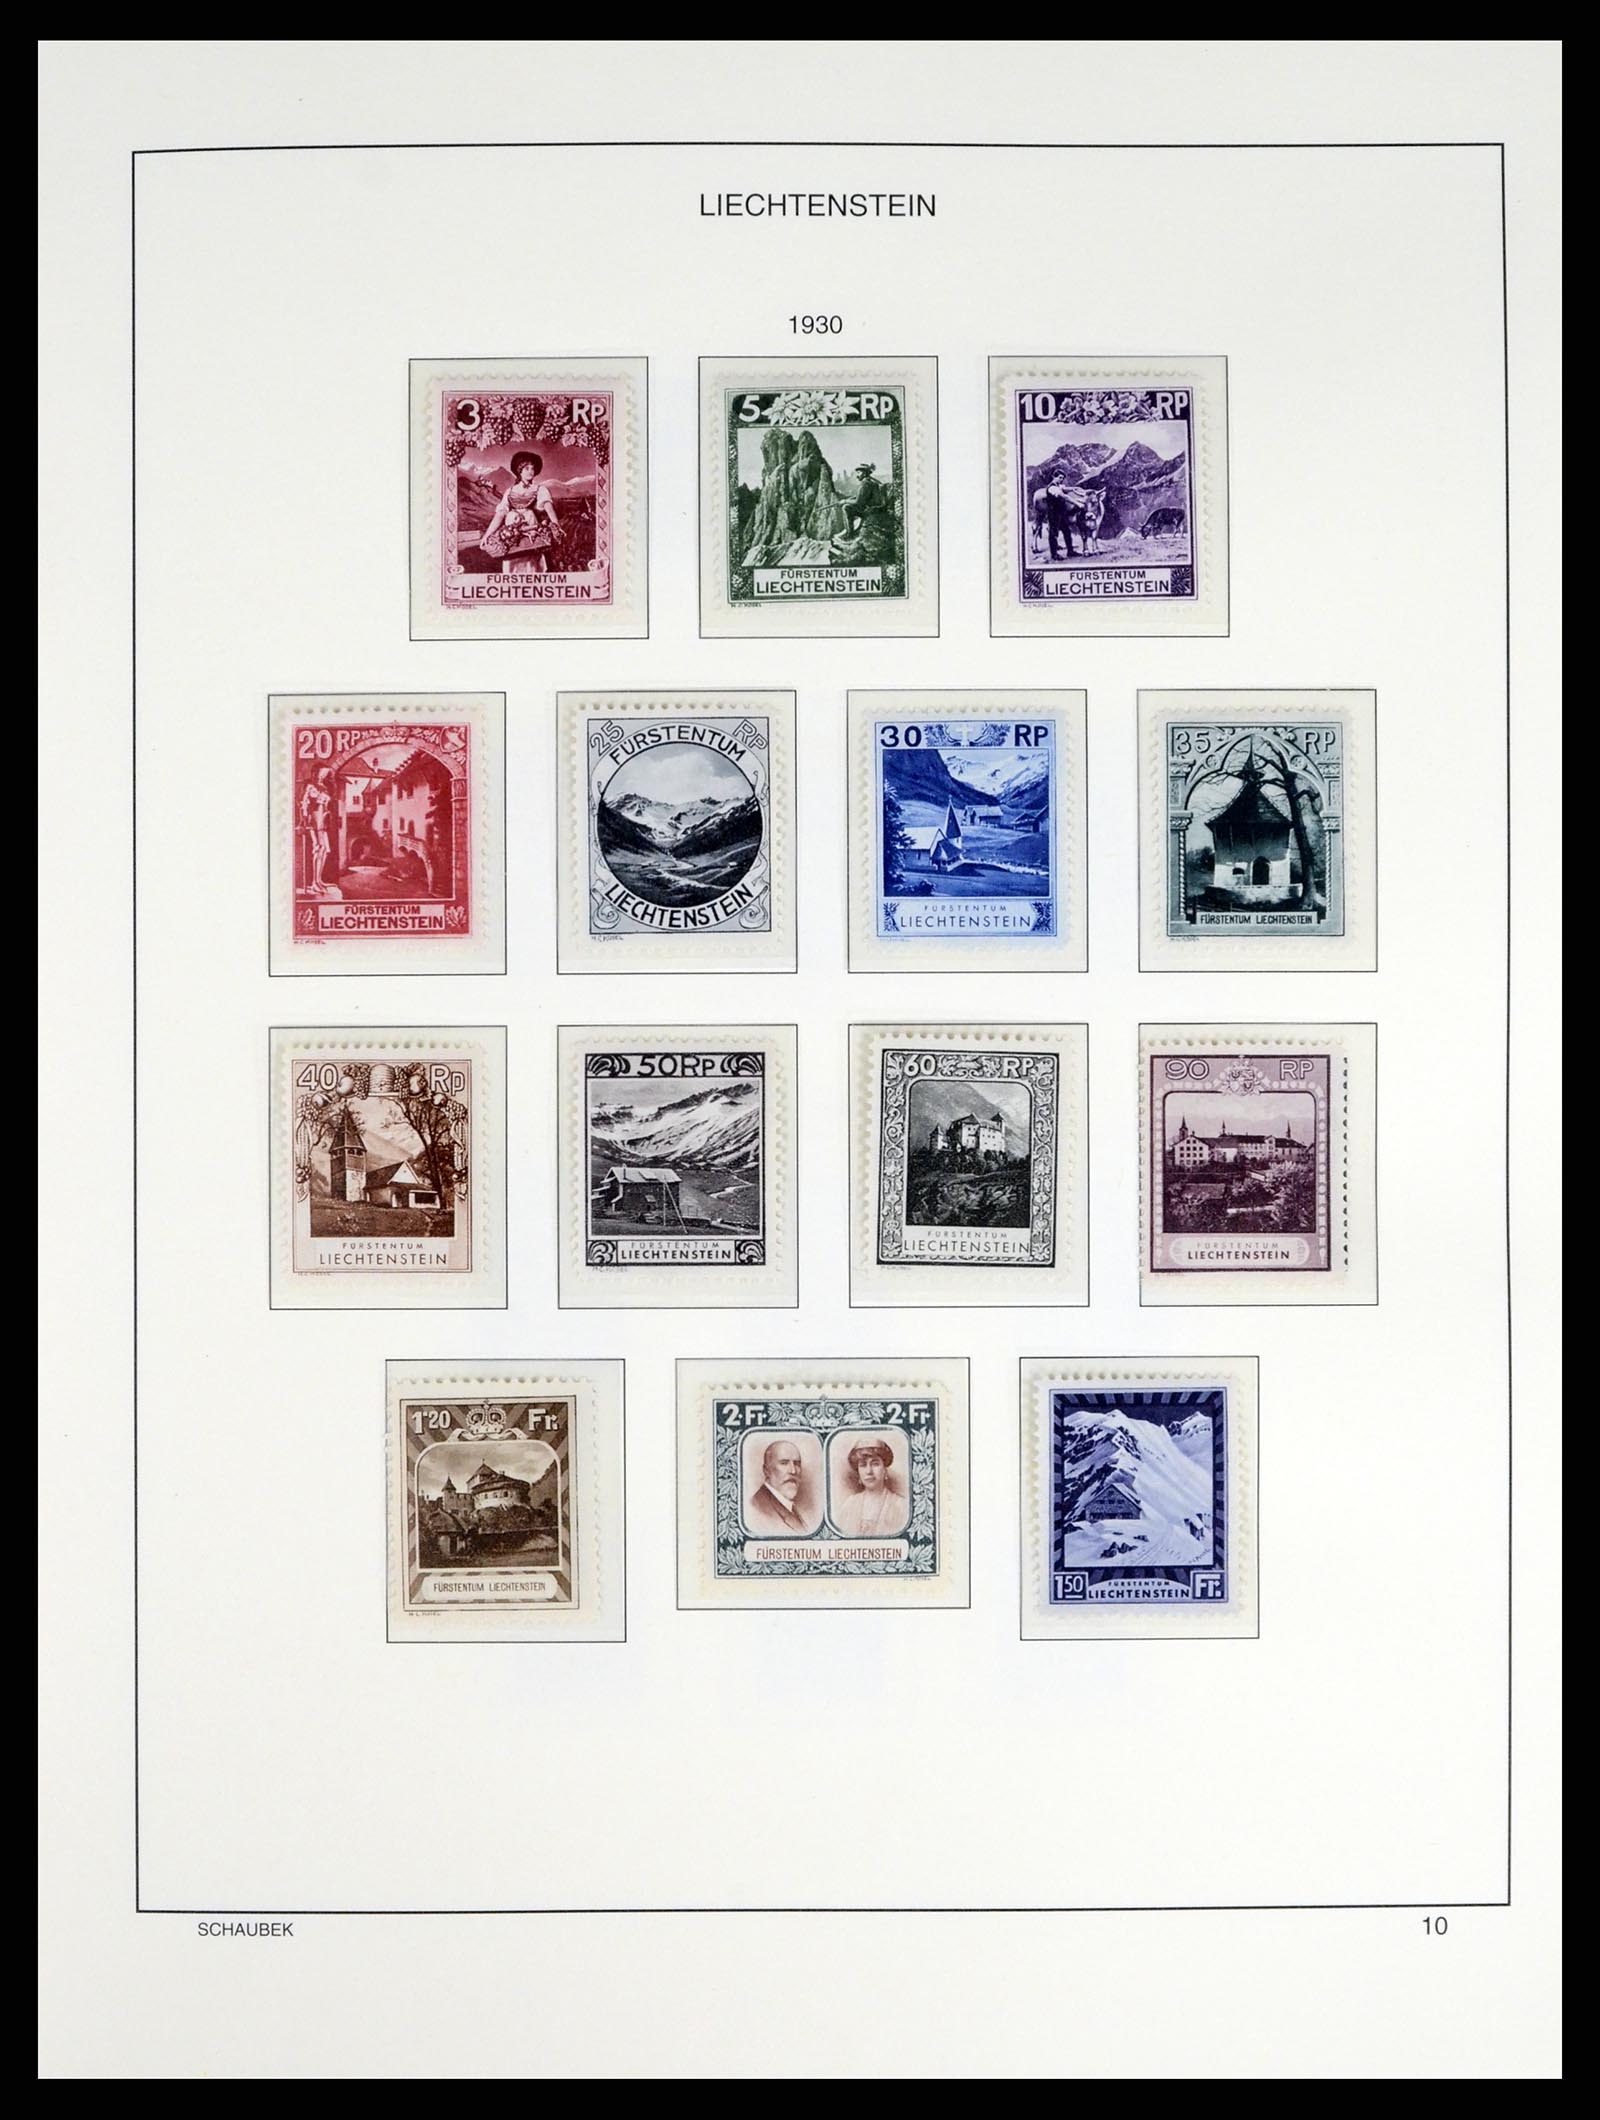 37547 010 - Stamp collection 37547 Liechtenstein 1912-2011.